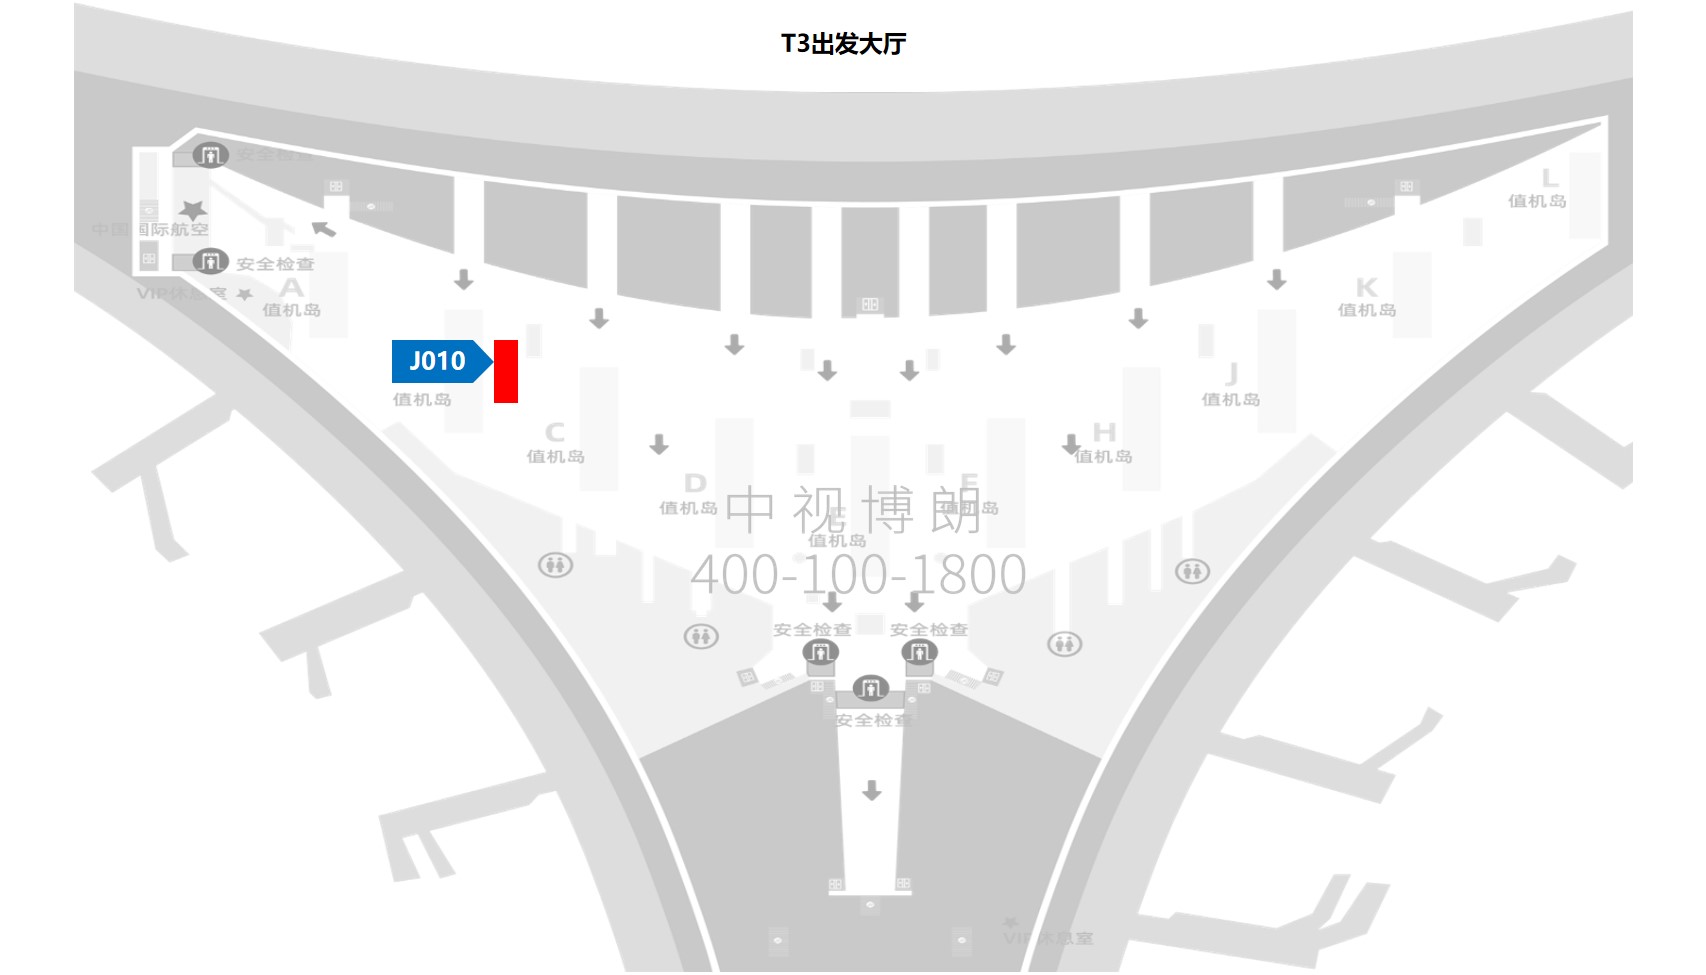 北京首都机场广告-T3出发大厅图腾灯箱J010位置图